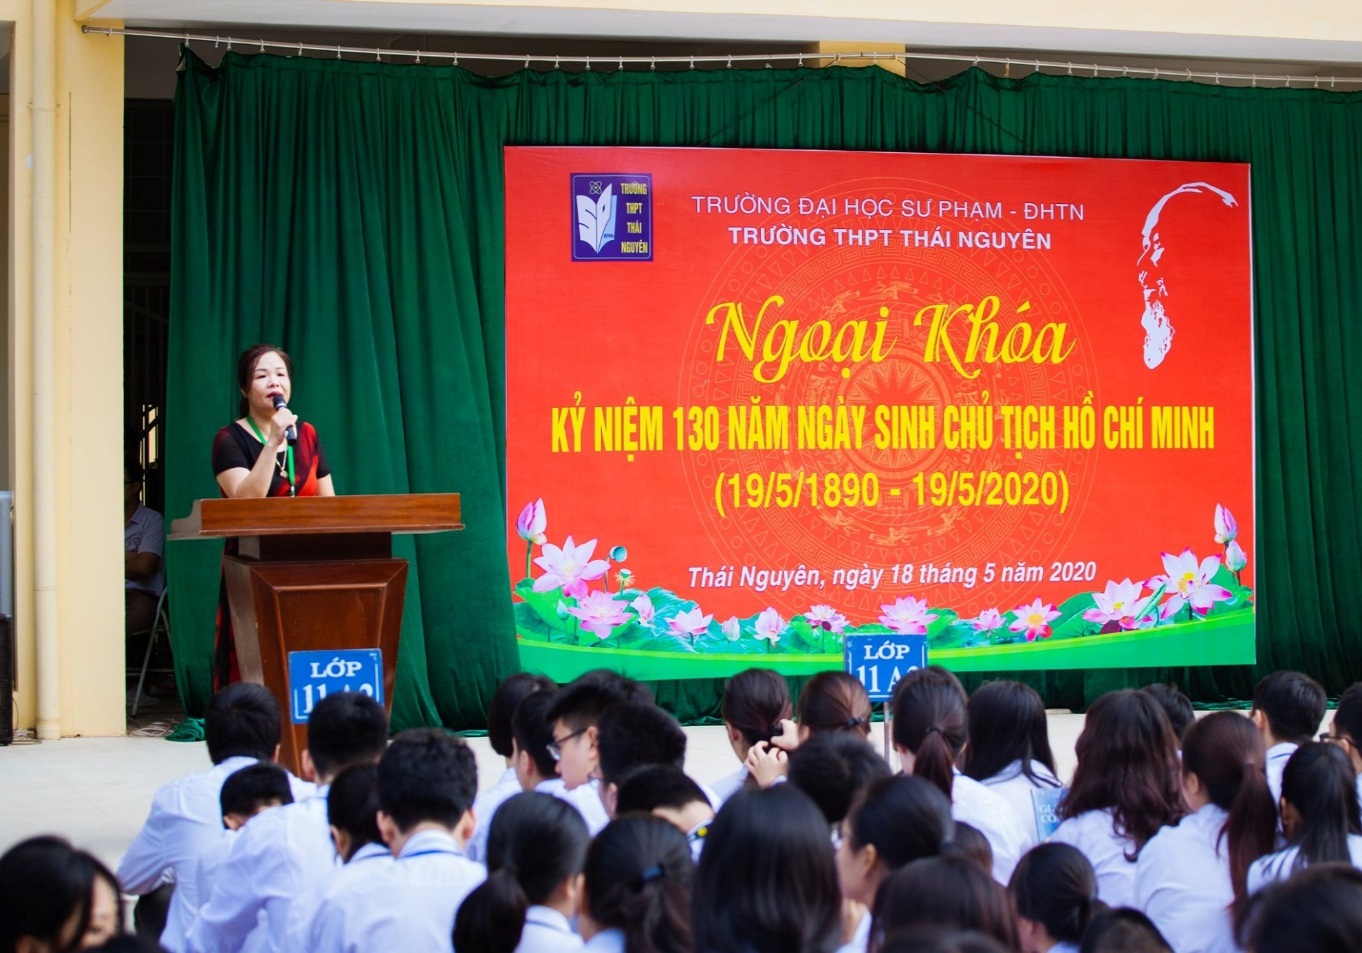 Trường THPT Thái Nguyên với chương trình ngoại khóa kỷ niệm 130 năm ngày sinh Chủ tịch Hồ Chí Minh (19/5/1890-19/5/2020)